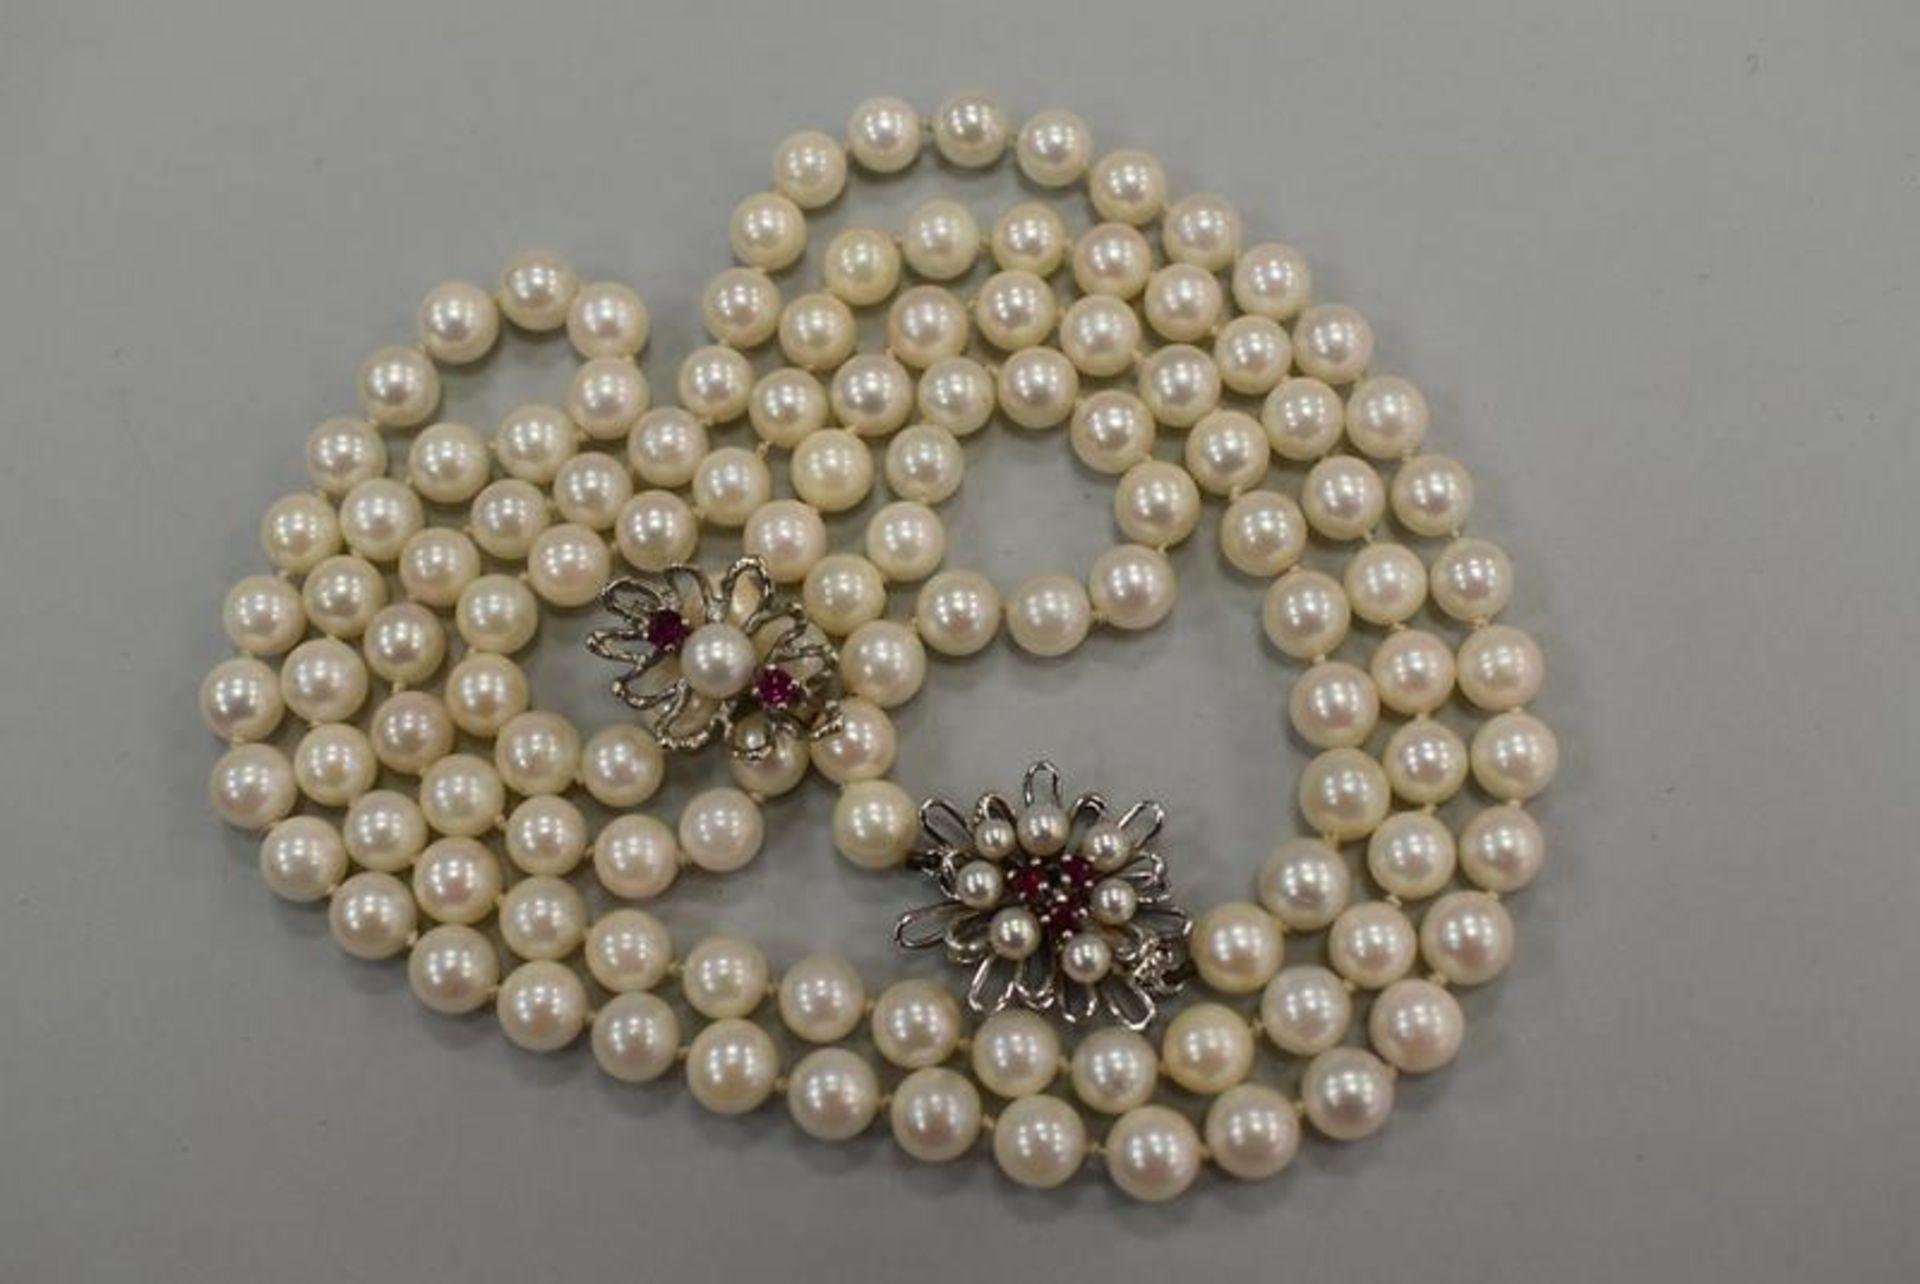 Perlenkette mit WeißgoldverschlußMindestpreis 50Bezeichnung Perlenkette mit Weißgoldverschluß